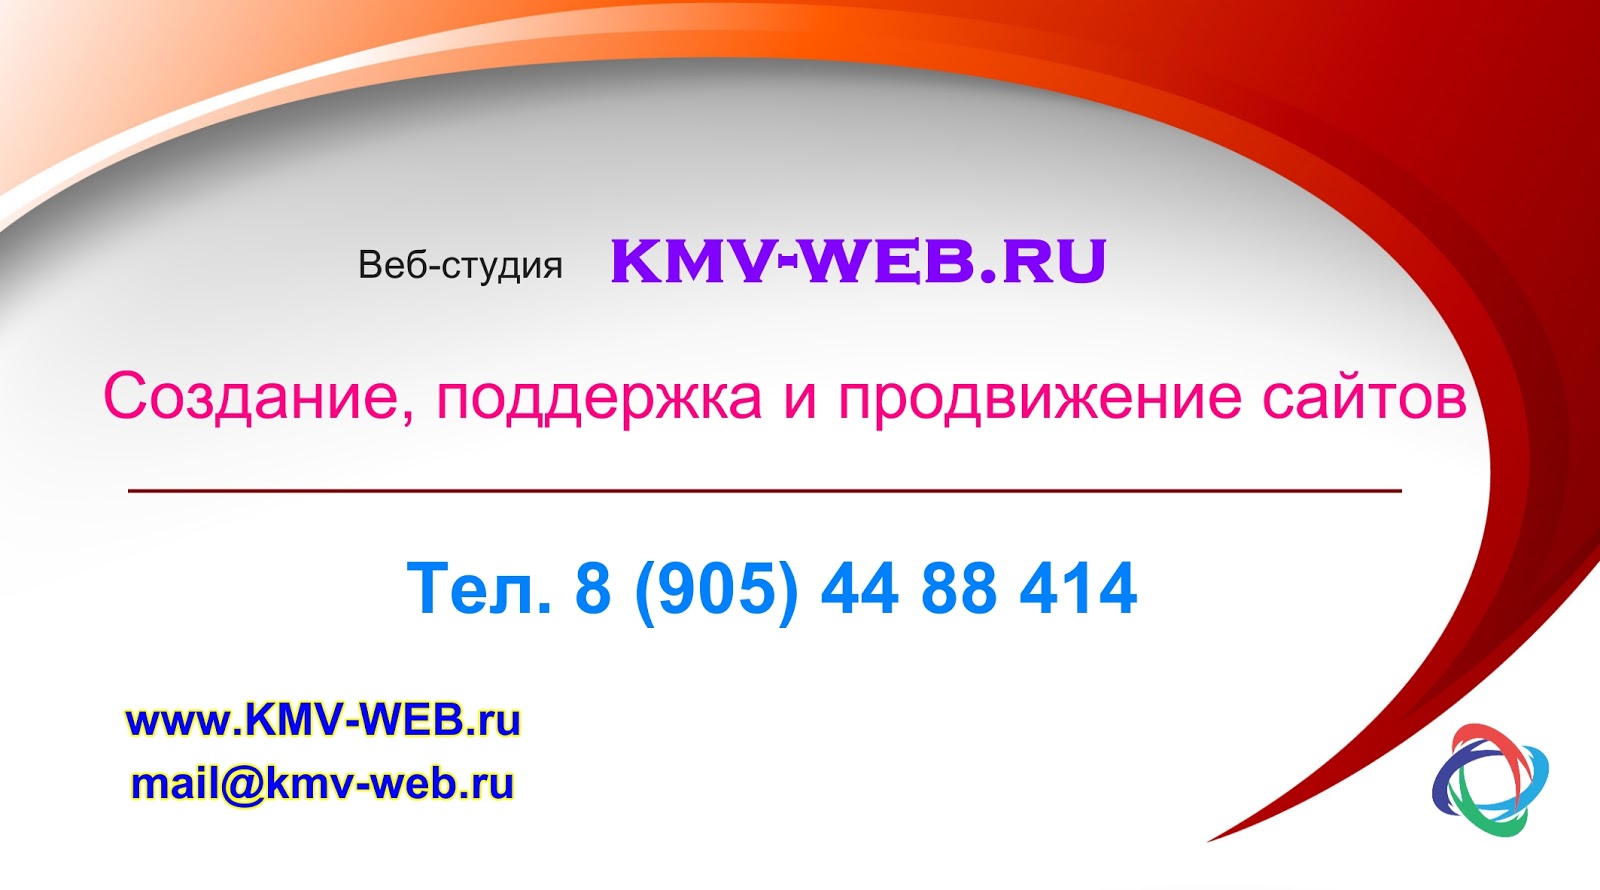 LWG KMV. 5 web ru